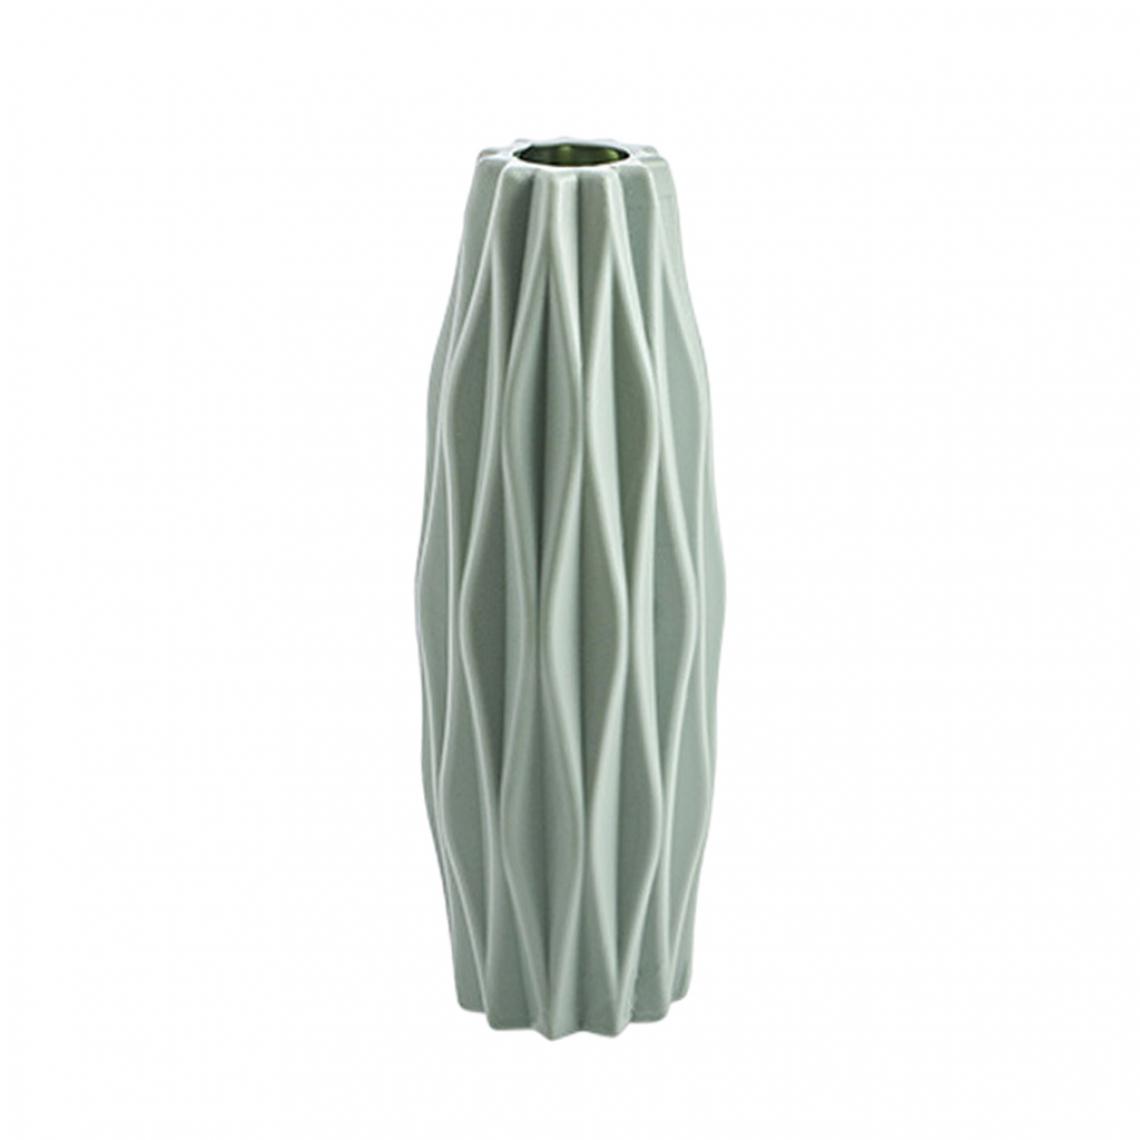 marque generique - Nordic Dry Flower Vase Photo Props Home Office Salon Bureau Green_A - Vases